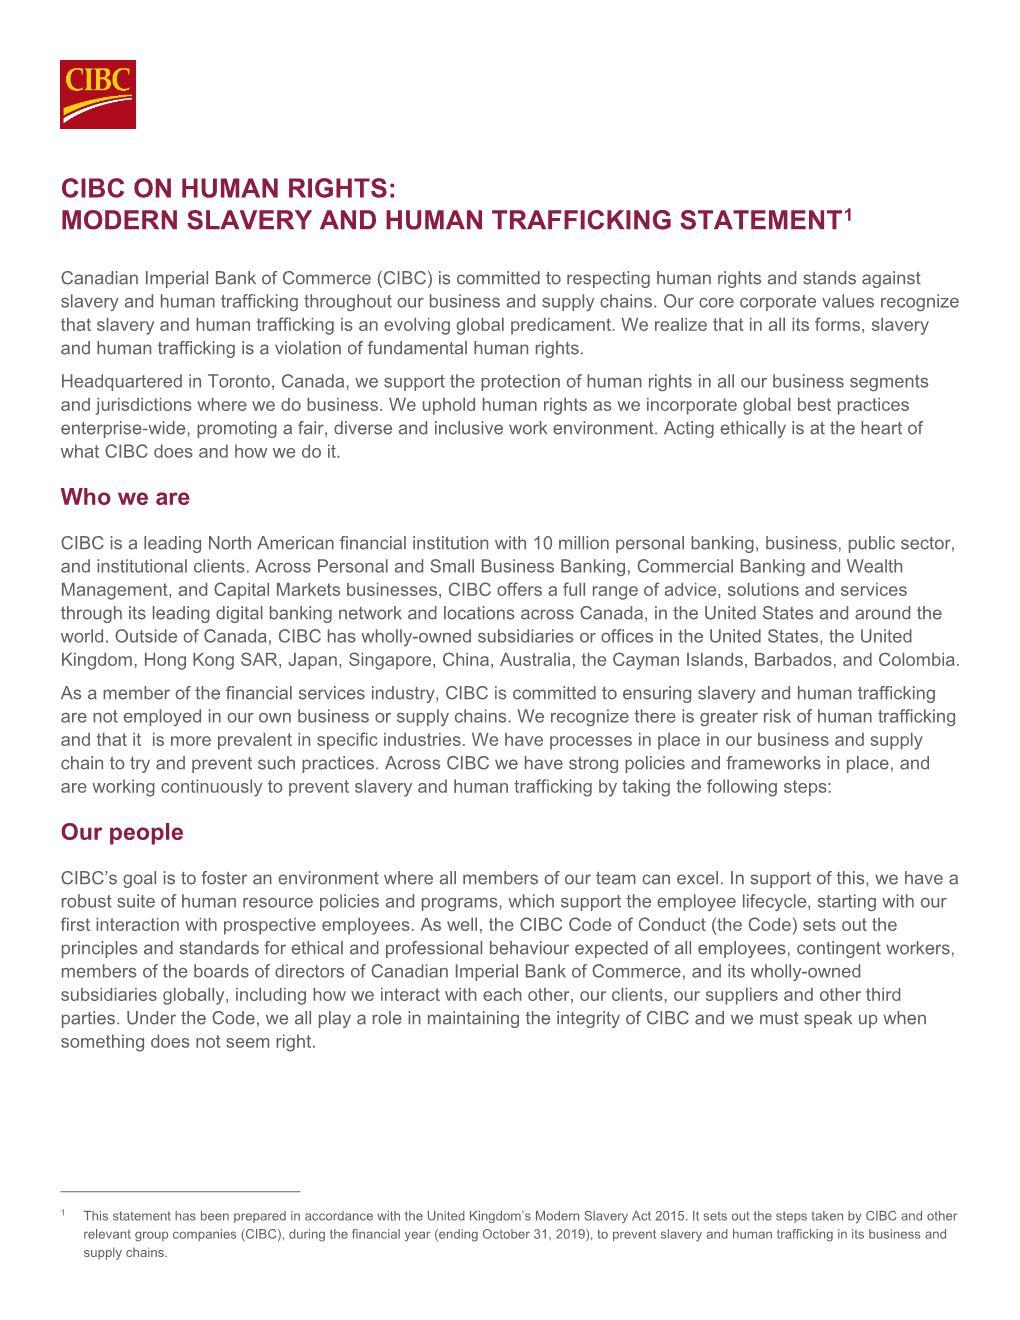 Modern Slavery and Human Trafficking Statement1